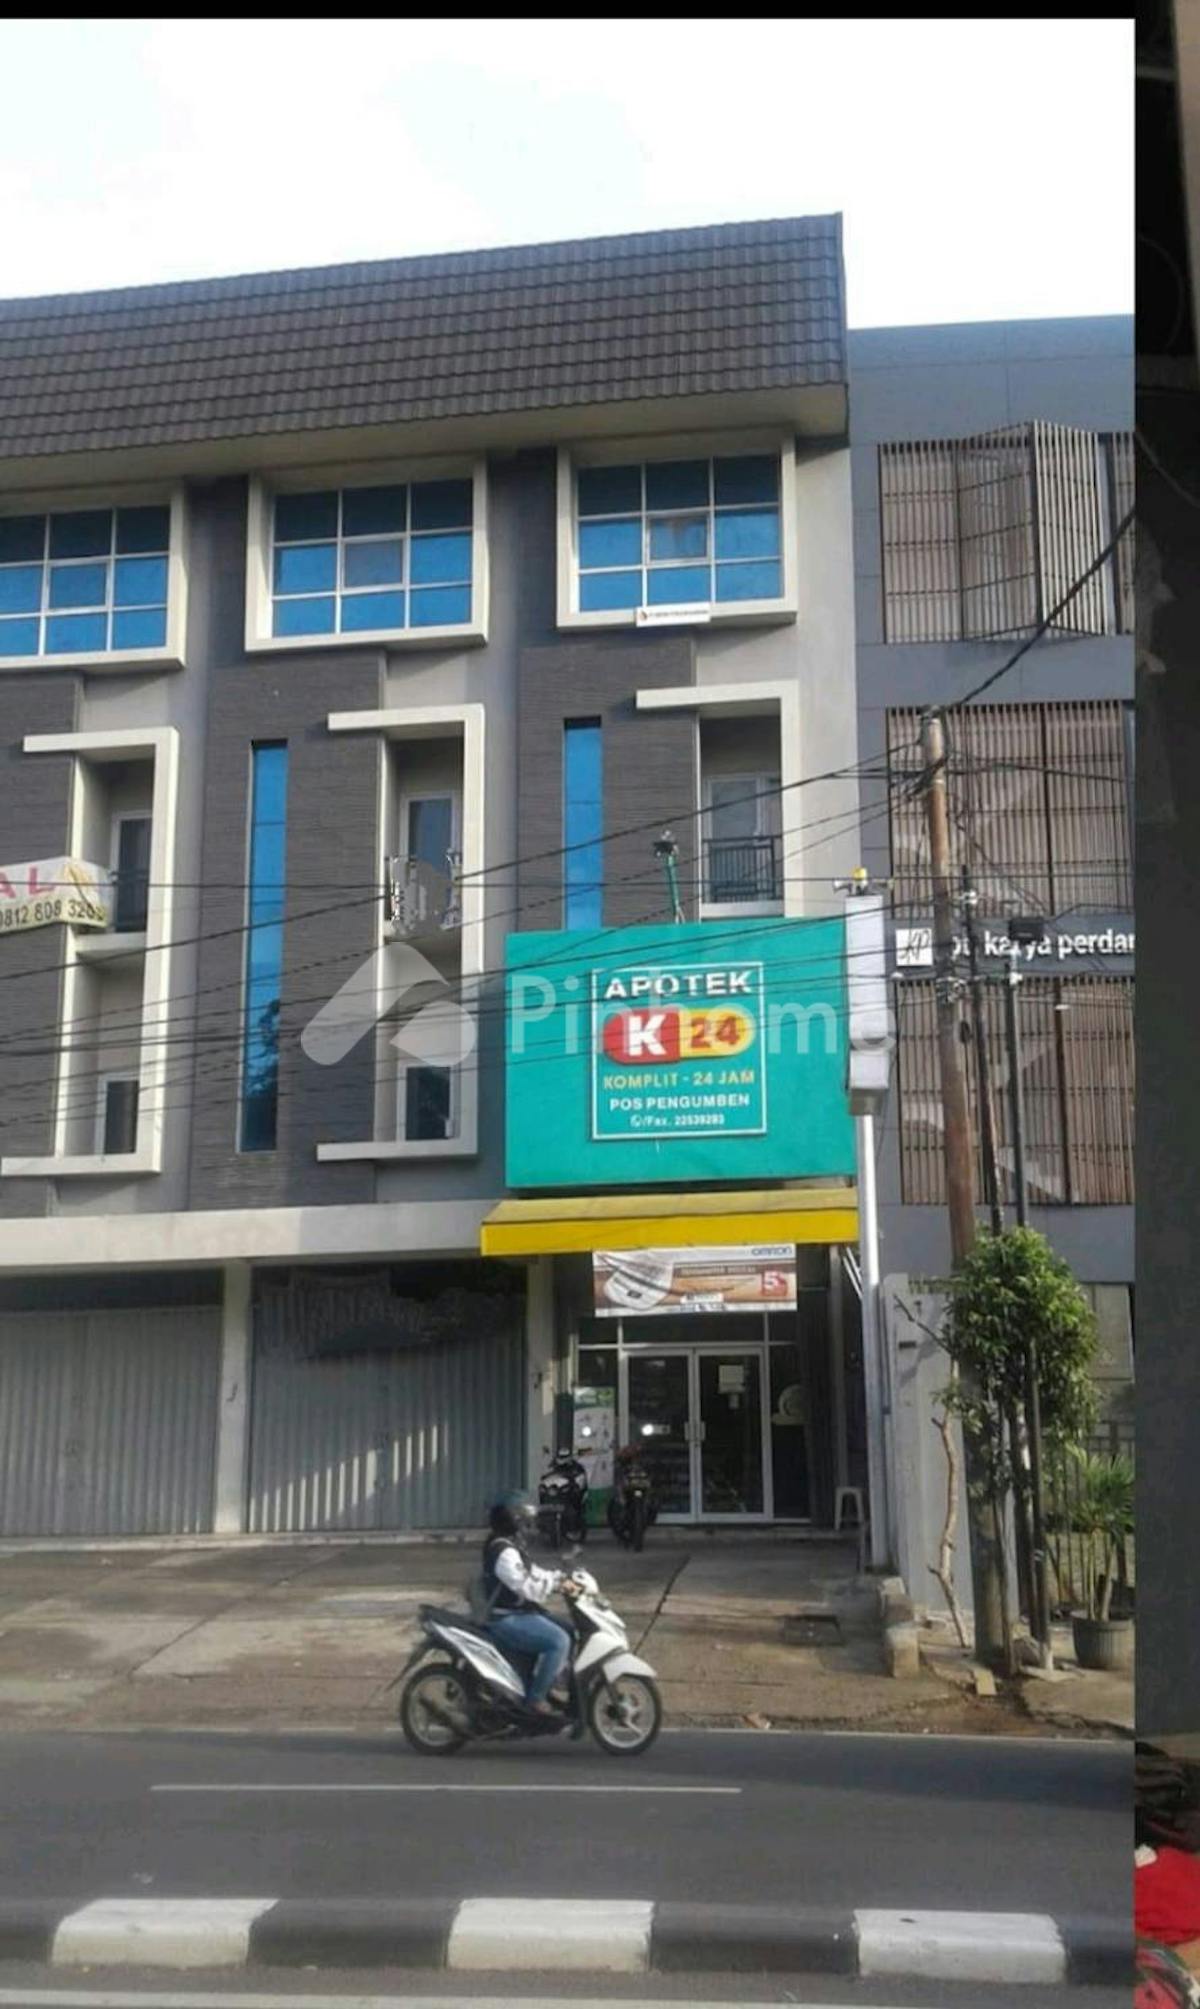 Disewakan Ruko Lokasi Strategis Dekat Pasar di Jl. Pos Pengumben Raya - Gambar 1